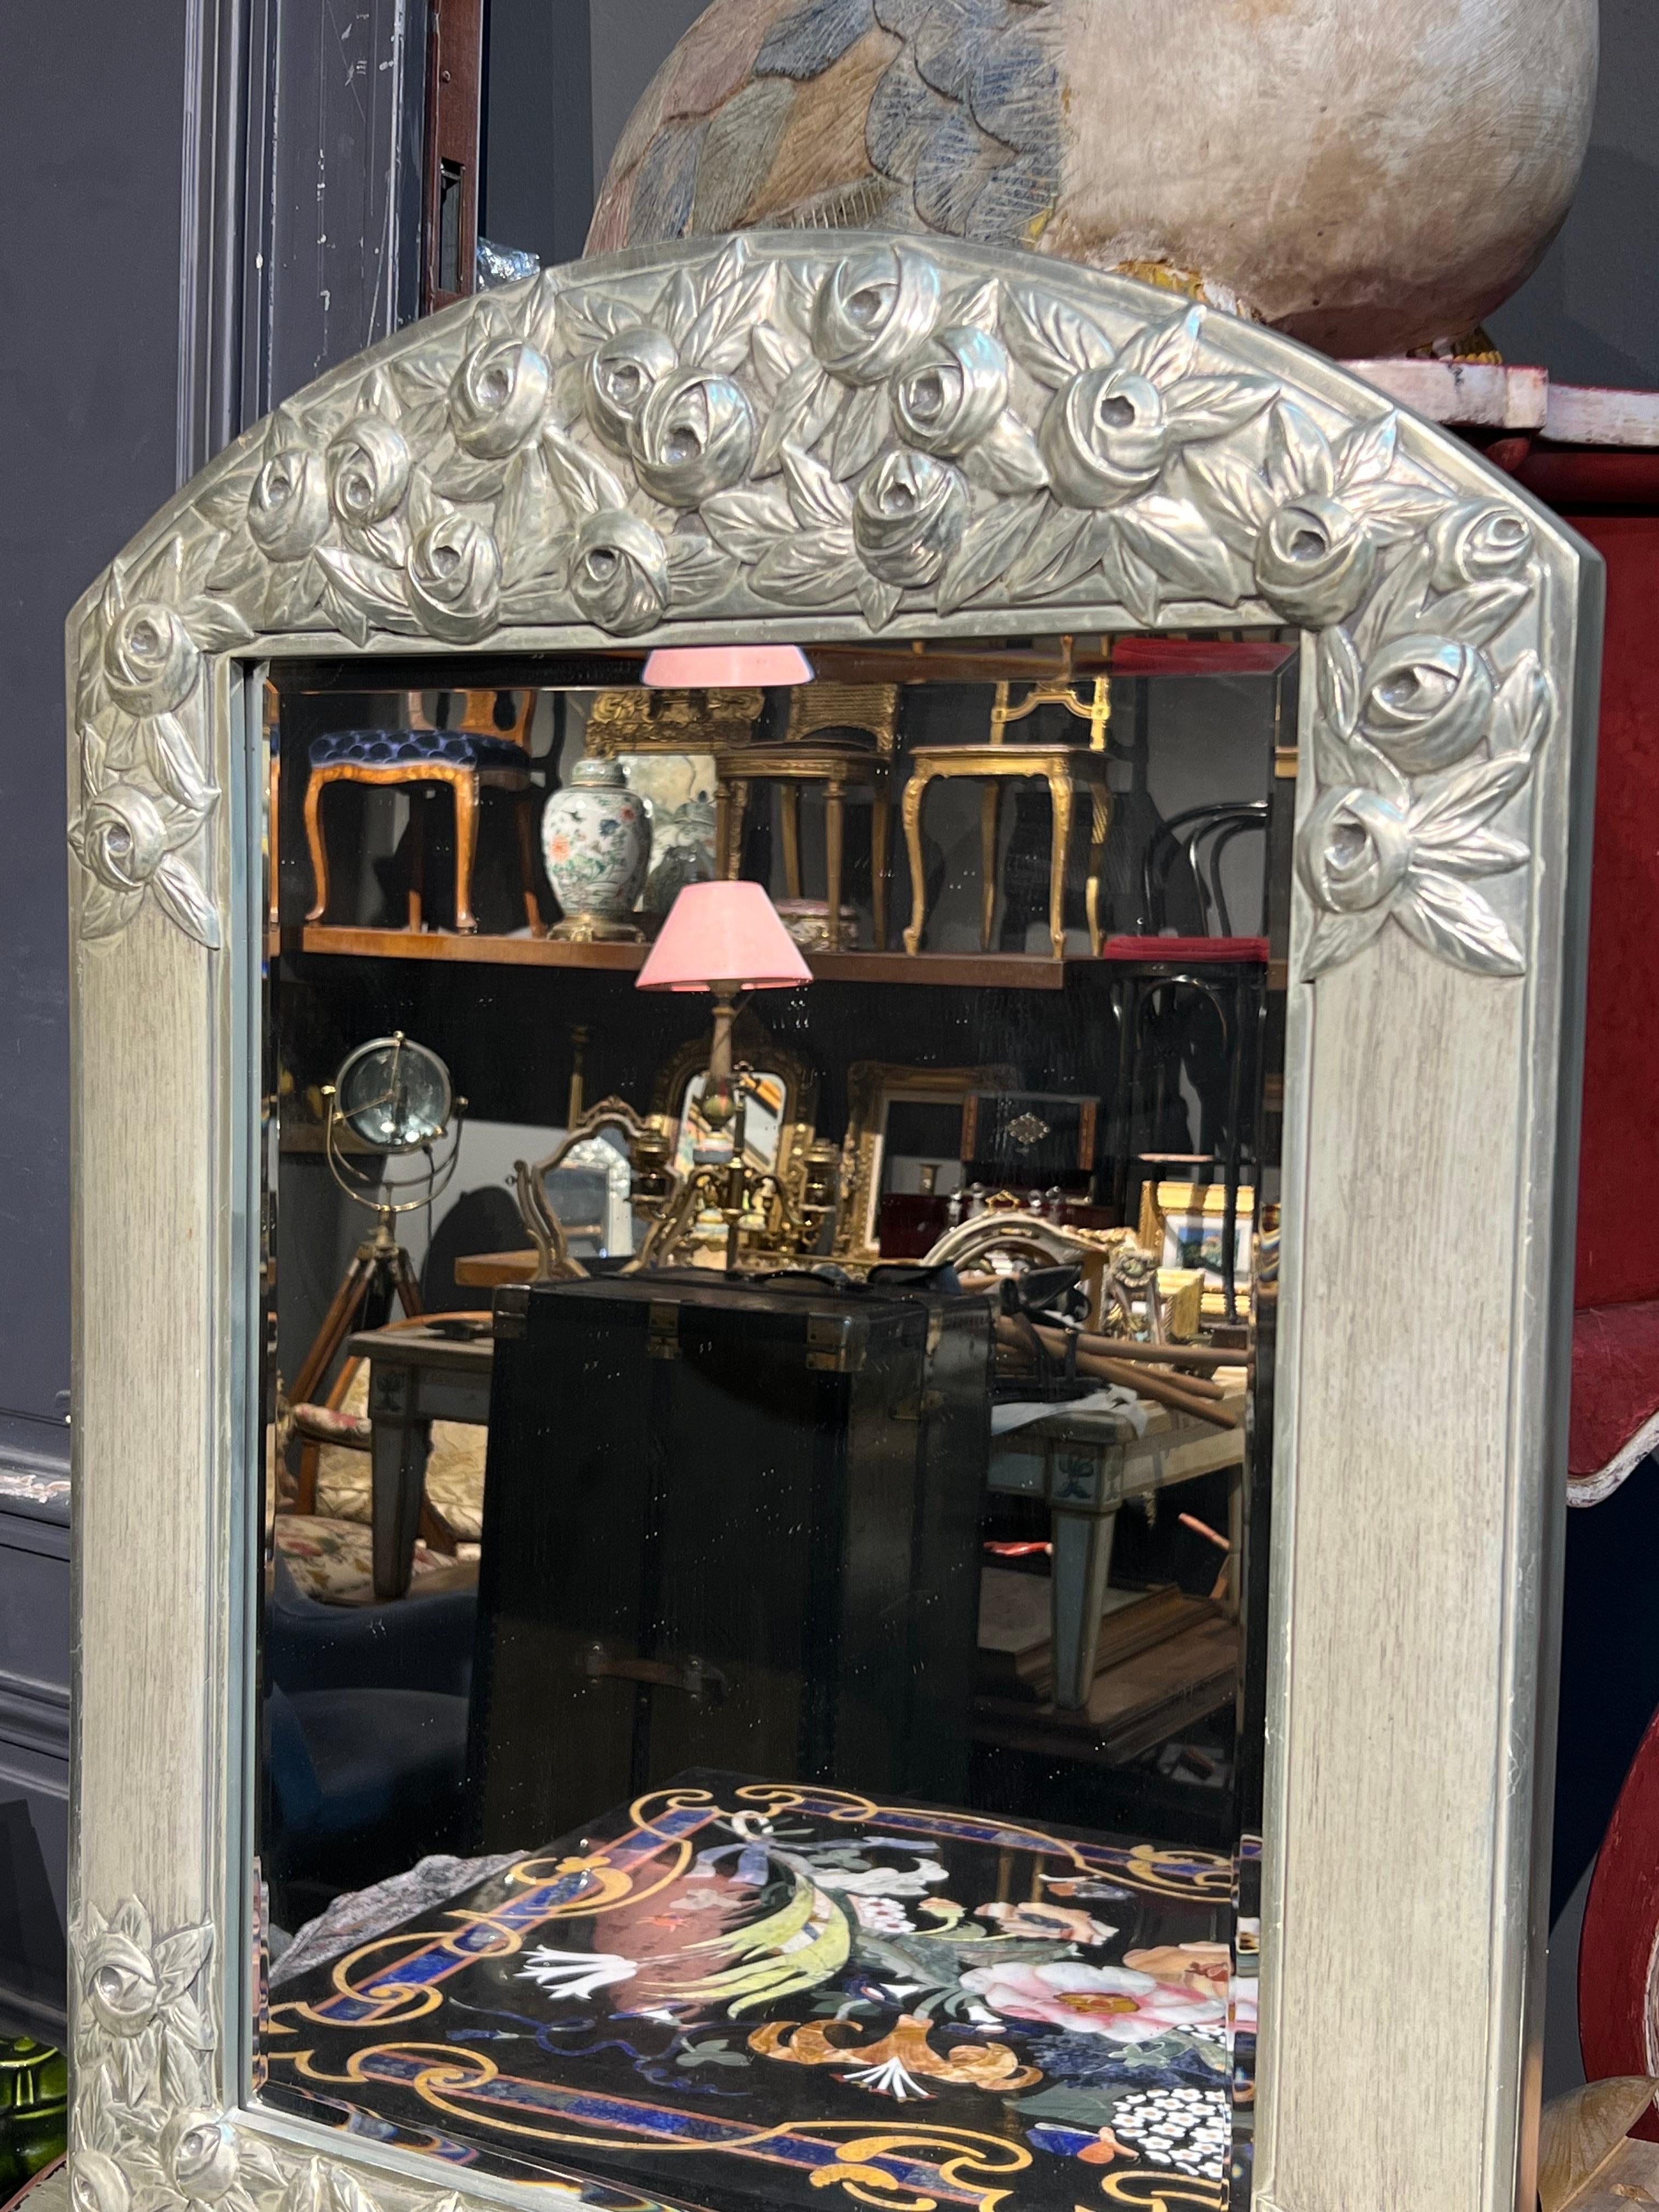 Miroir en bois sculpté à la main Art Déco français du 20e siècle, décoré de roses peintes à la main en couleur argentée. Belle pièce qui, de loin, ressemble à du métal. 
France, vers 1920